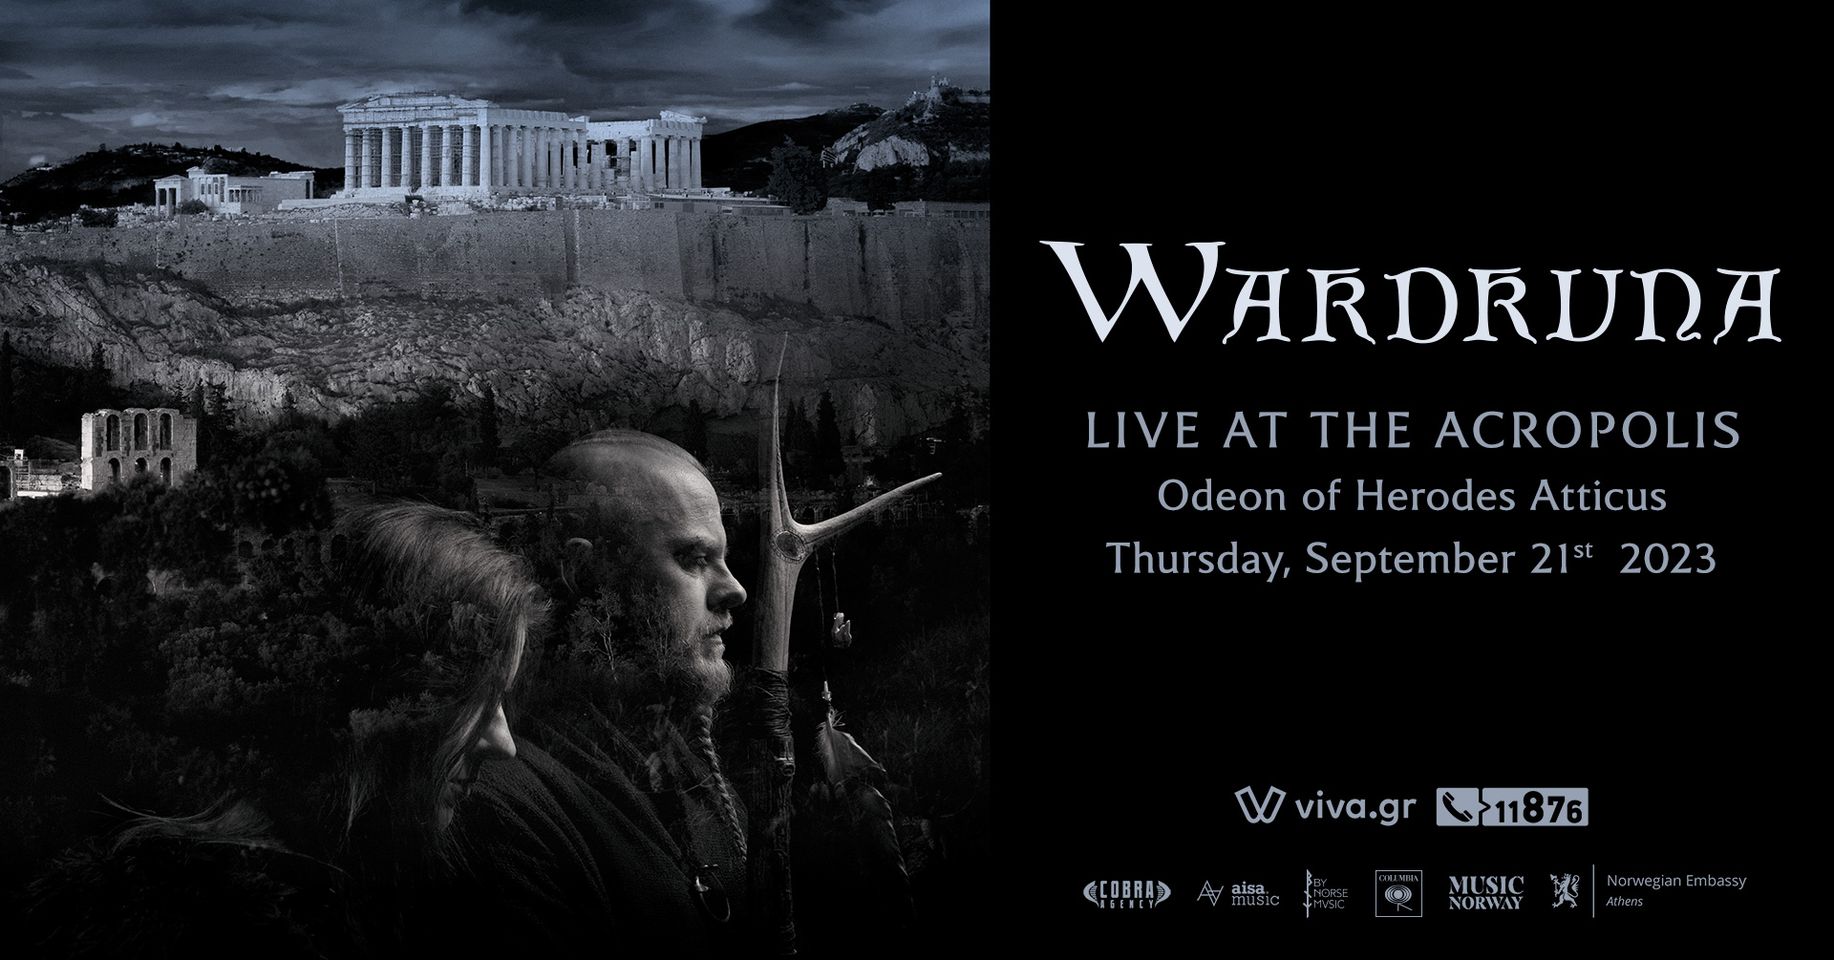 Οι Wardruna στην Ελλάδα για μια συναυλία